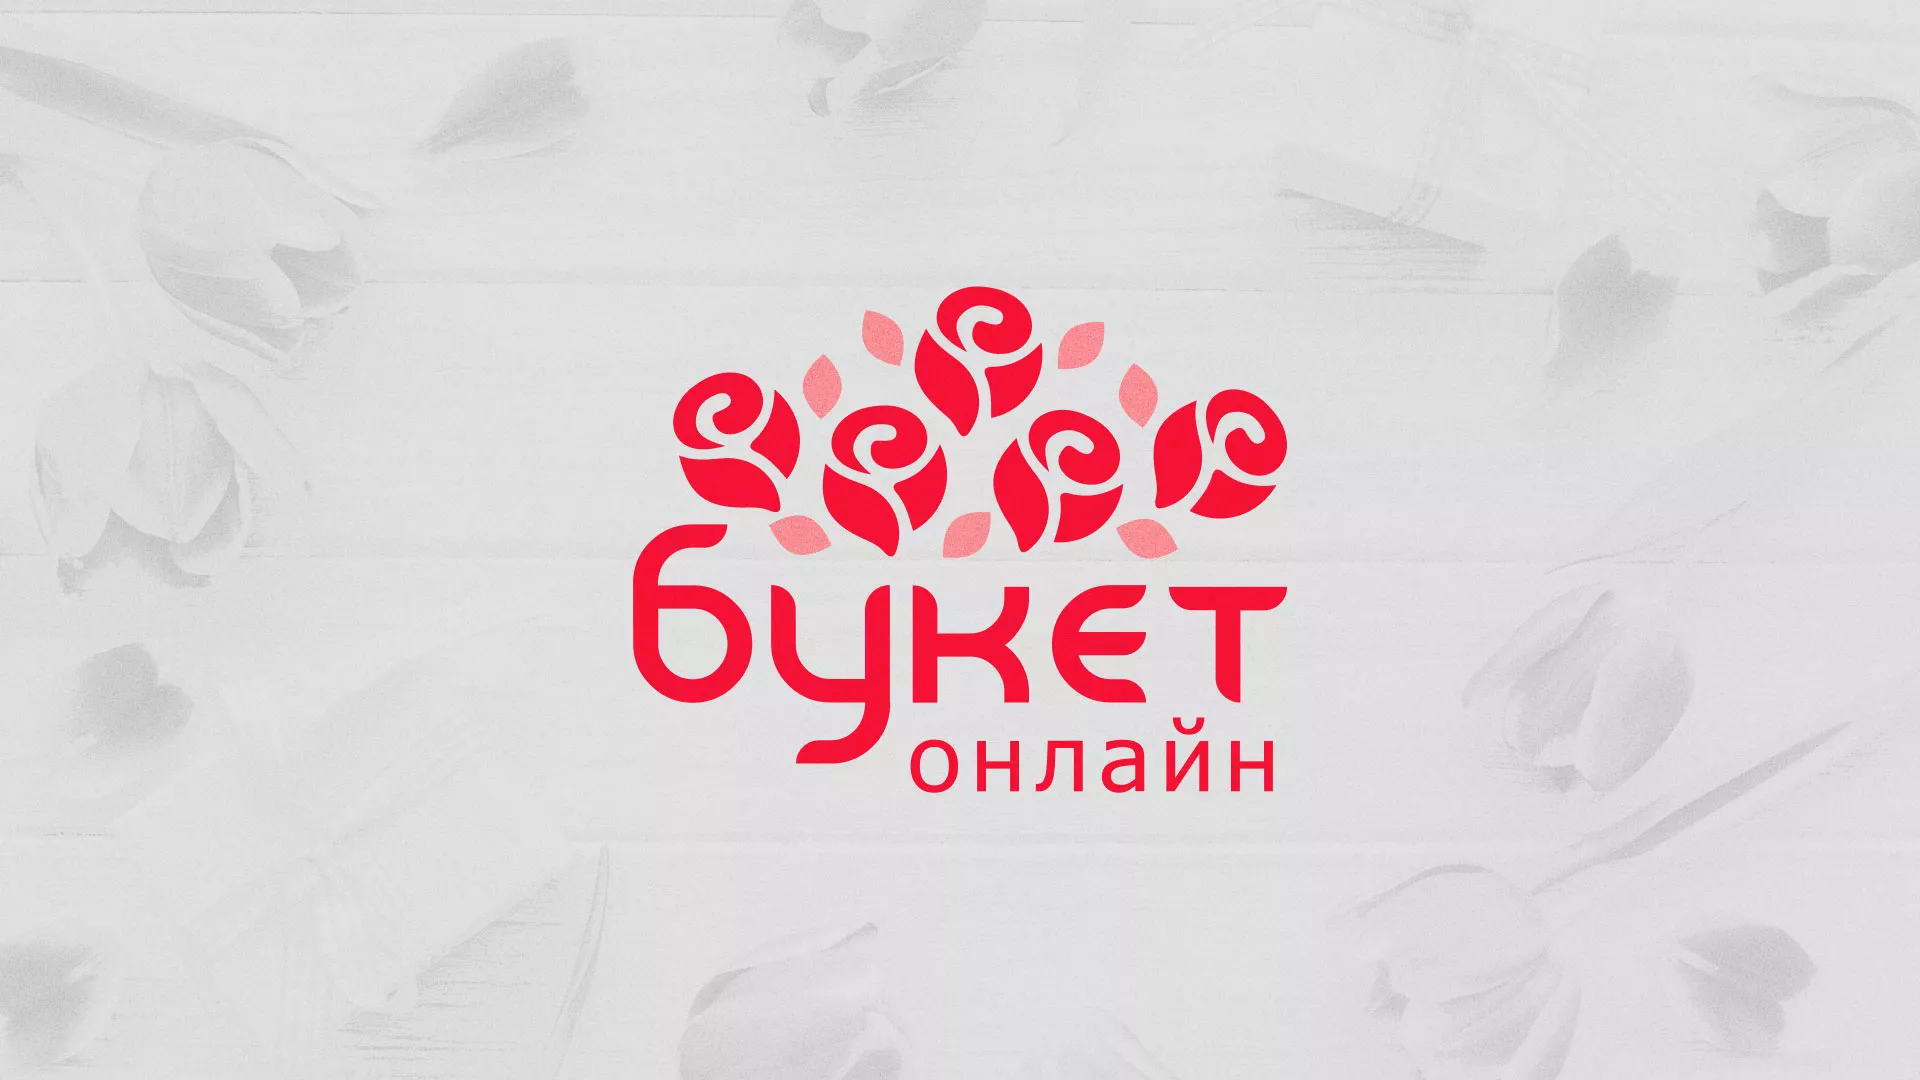 Создание интернет-магазина «Букет-онлайн» по цветам в Павлово